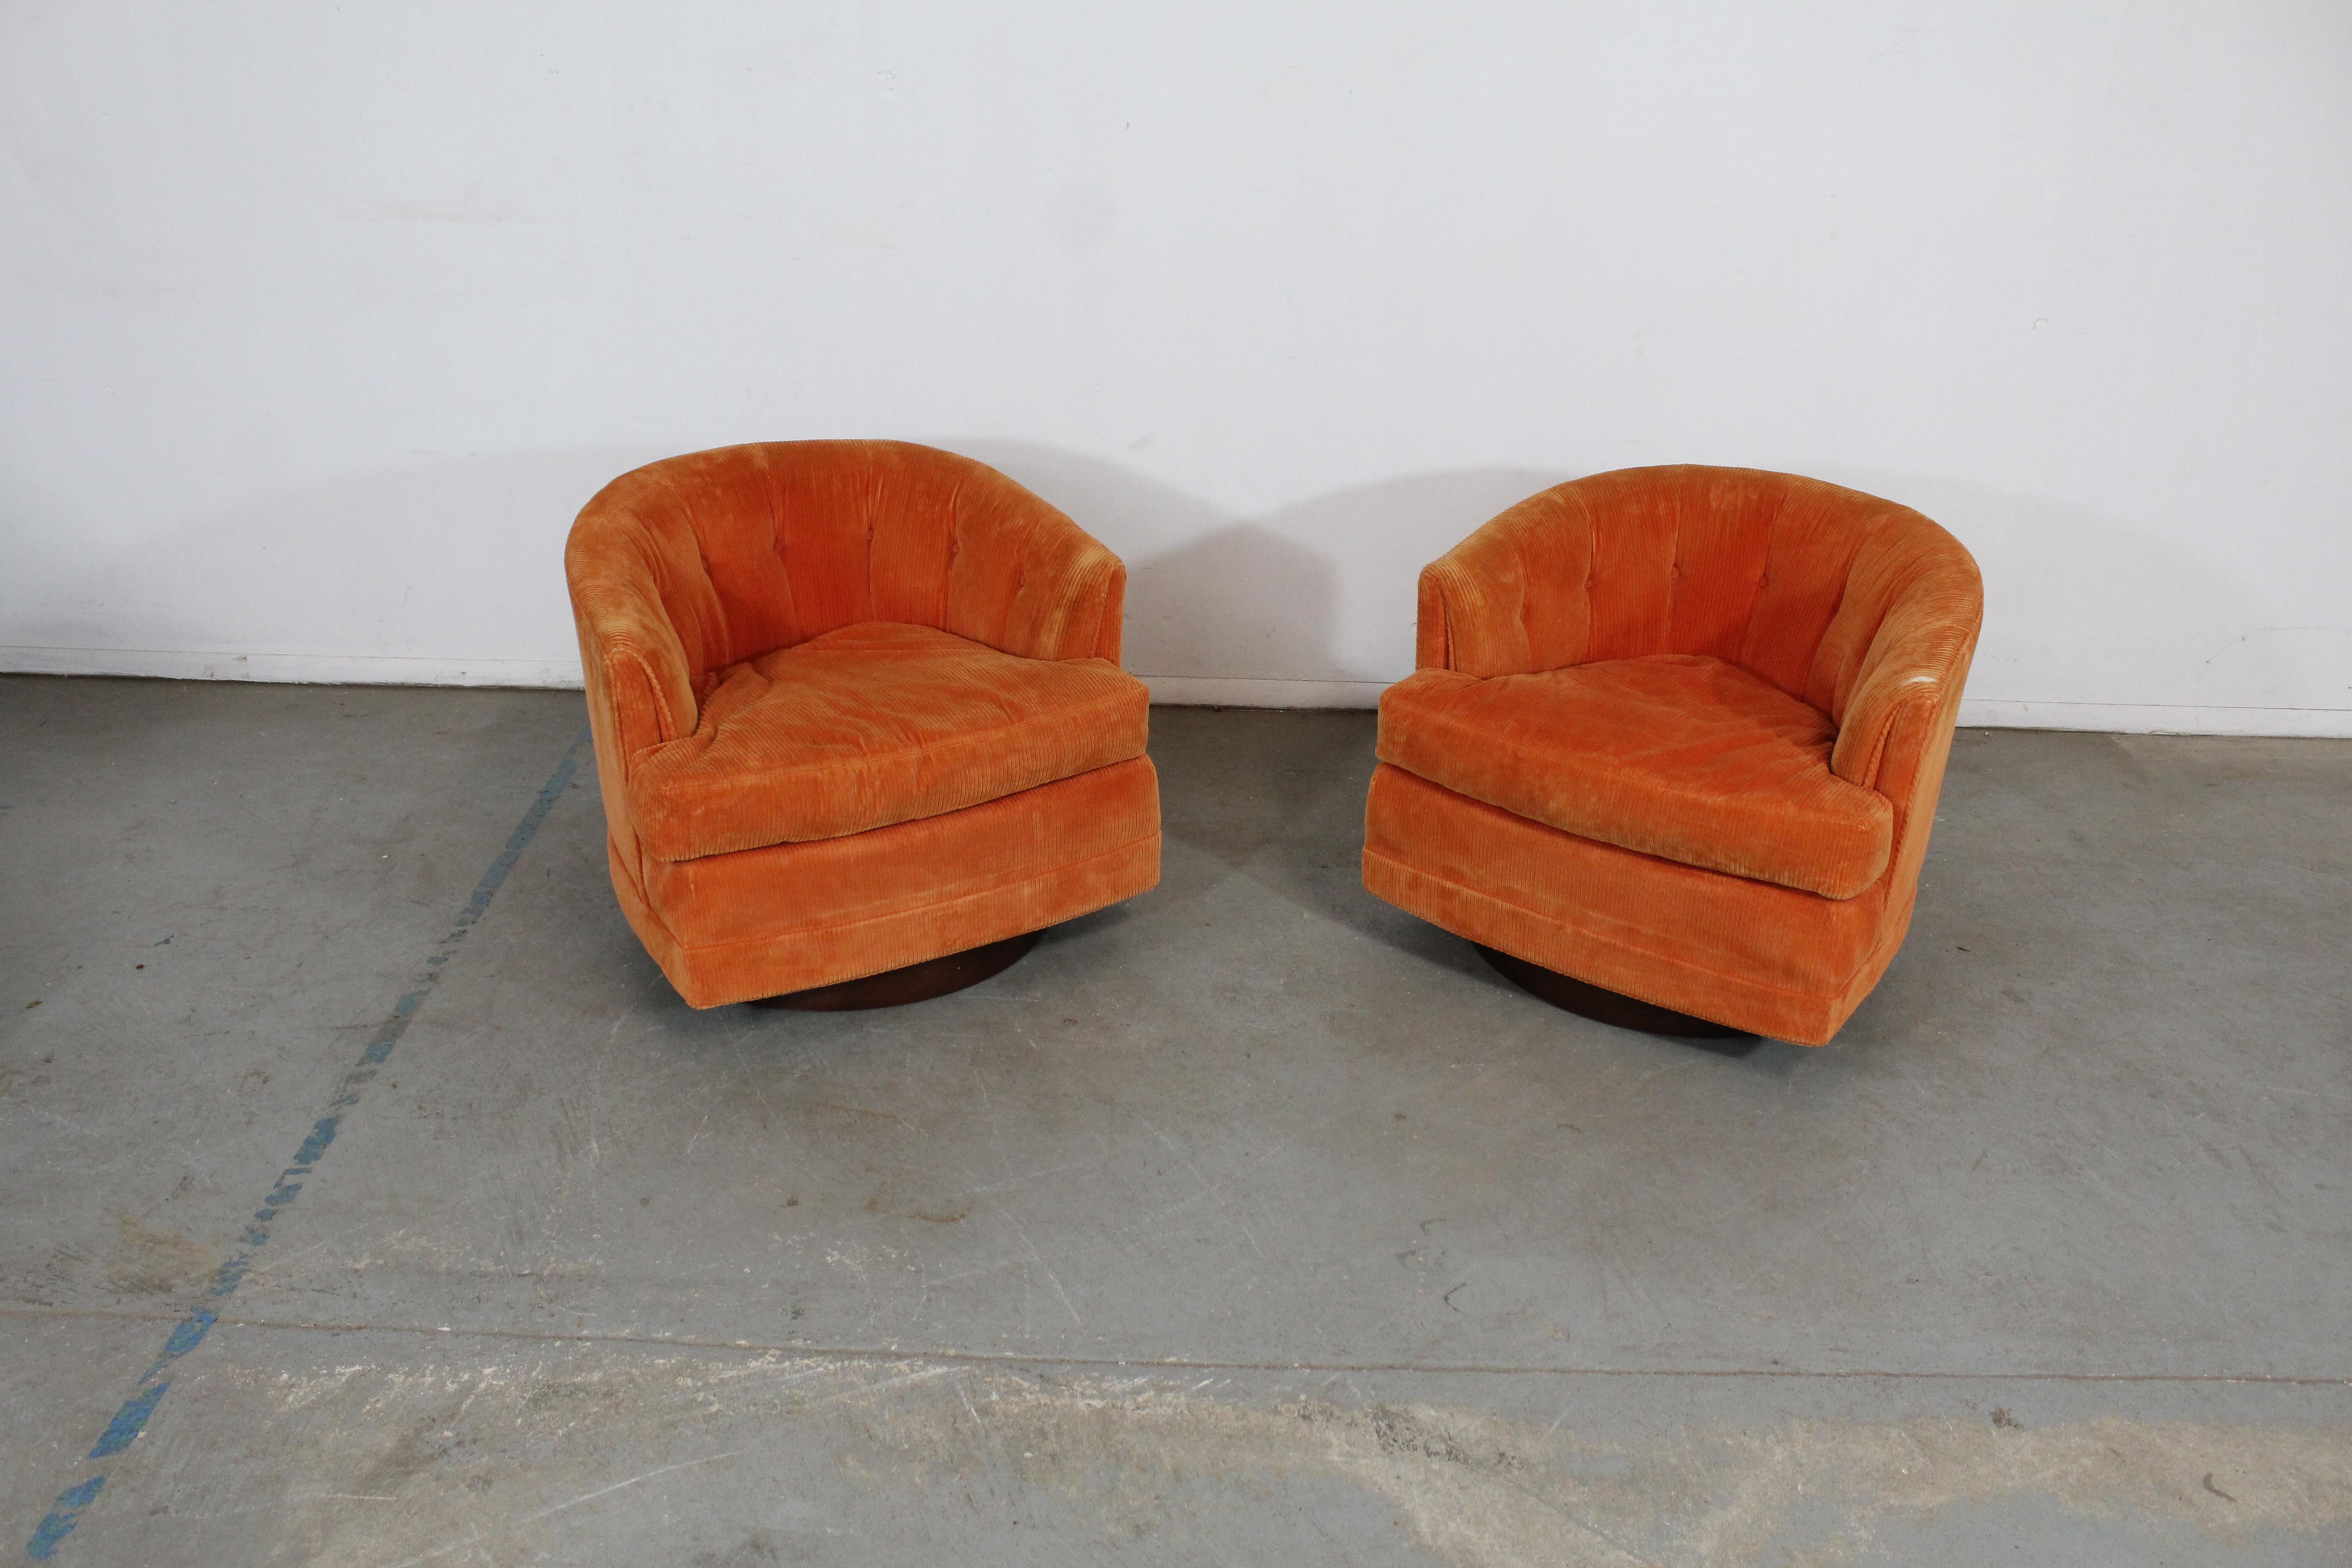 Paar Mid-Century Modern Barrel back swivel club chairs

Angeboten wird ein Paar von Vintage Mid-Century Modern Stil Drehstühle von Selig. Diese Stühle haben runde Rückenlehnen und Gestelle aus Nussbaumholz. Sie sind in gutem Zustand, müssen aber